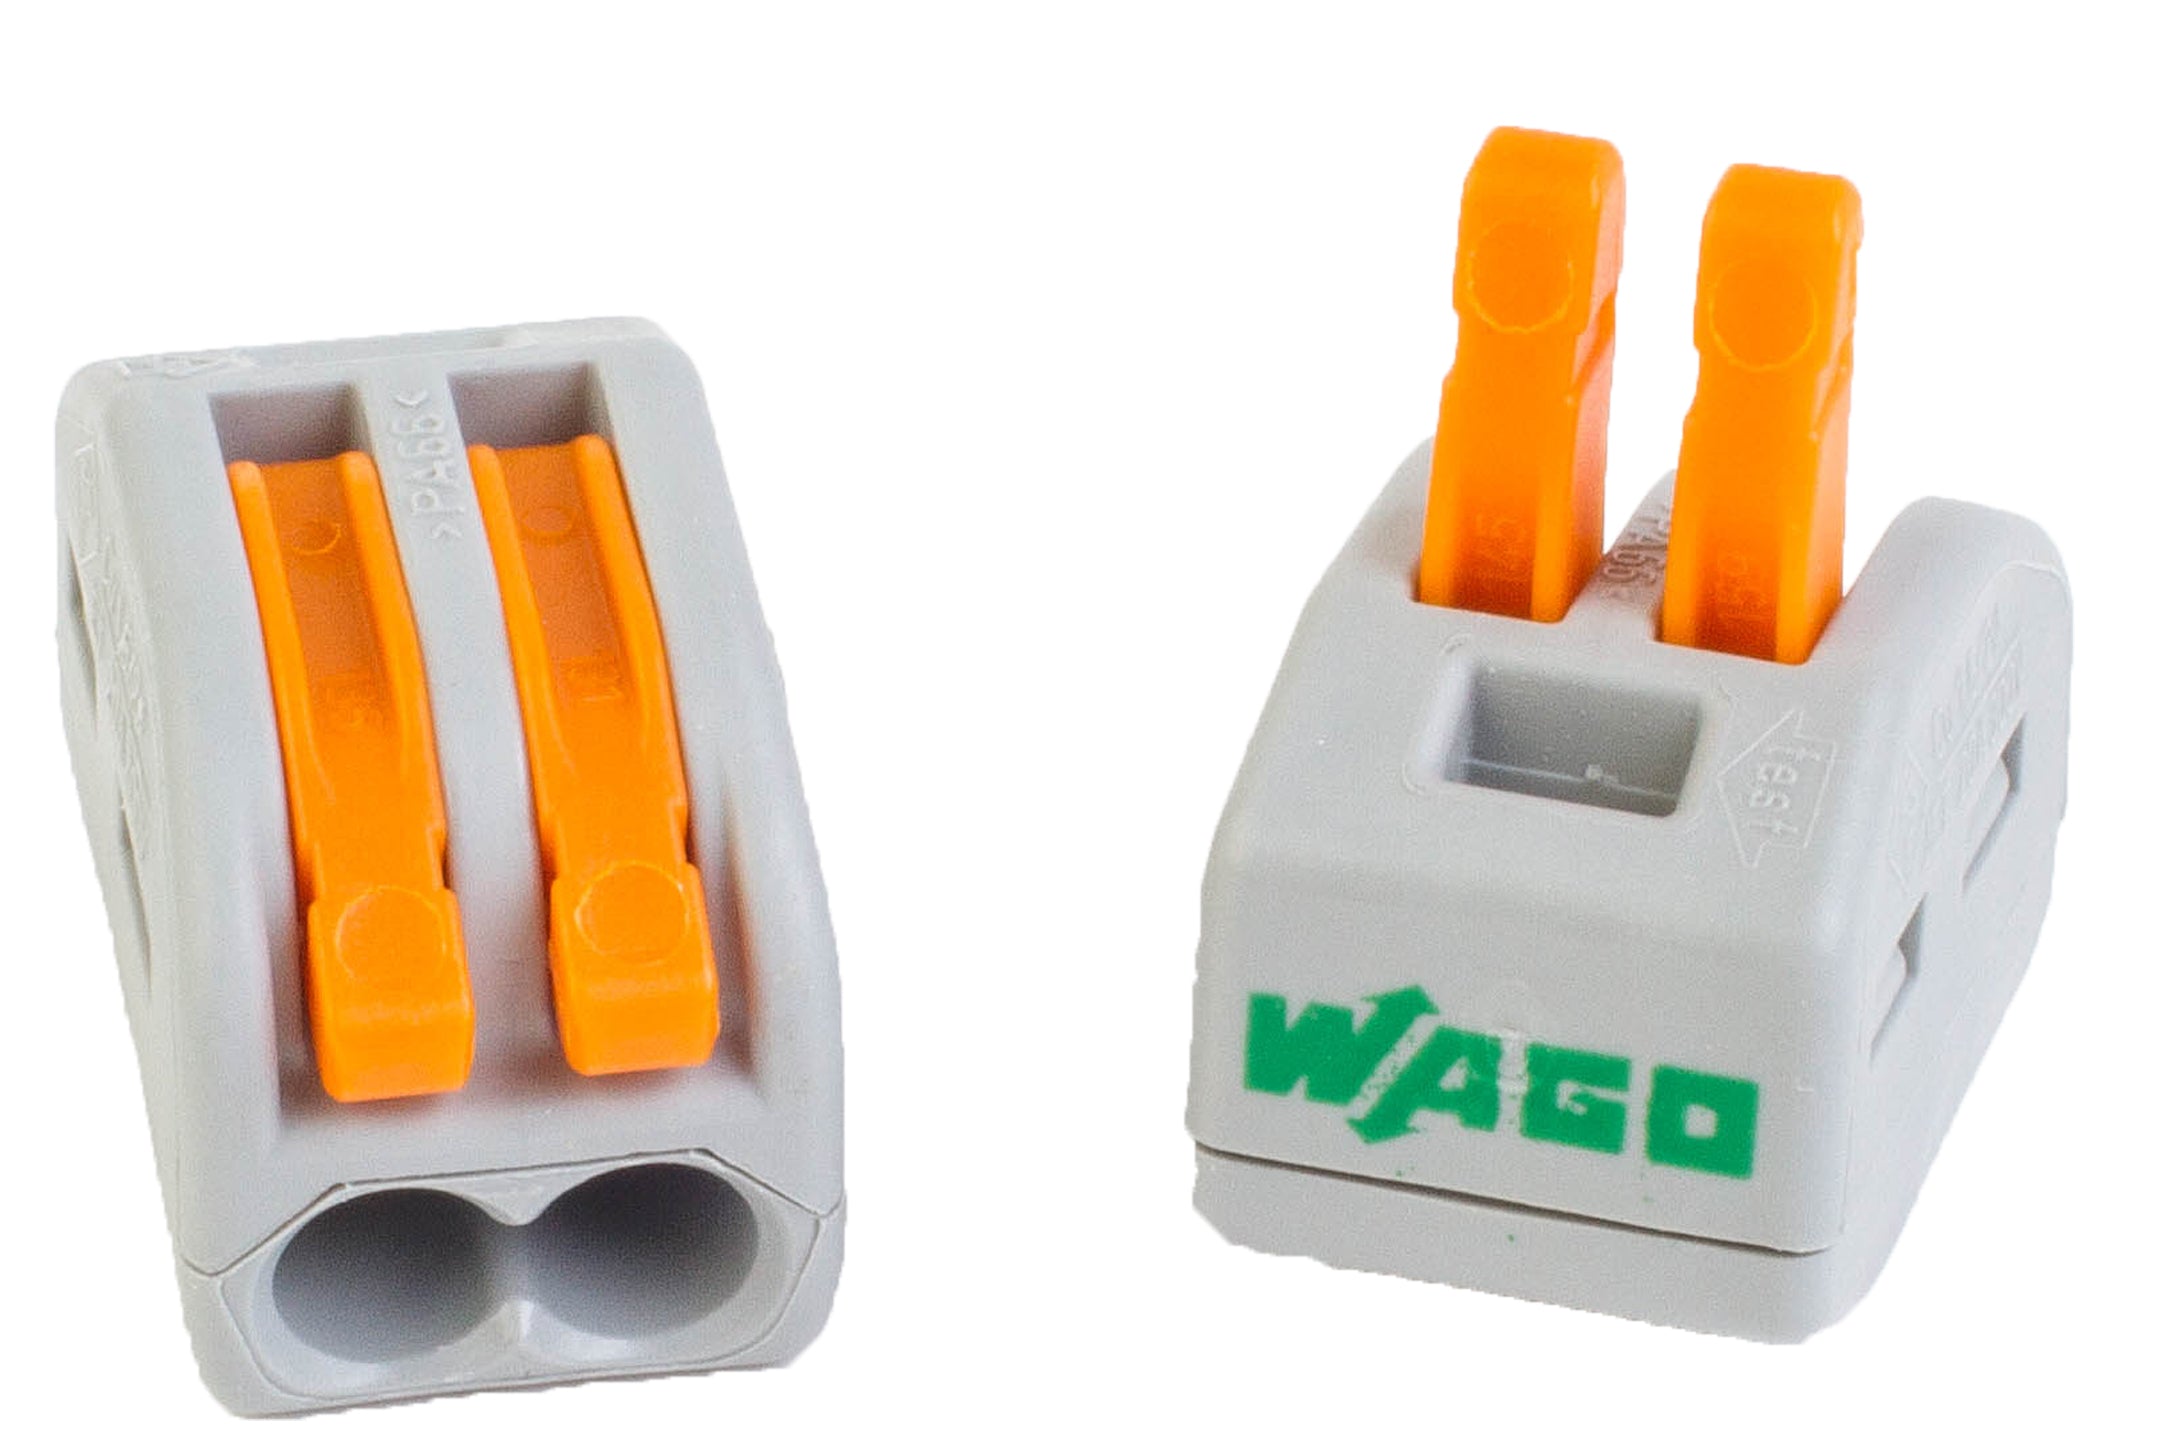 Wago Lever-Nut Connectors